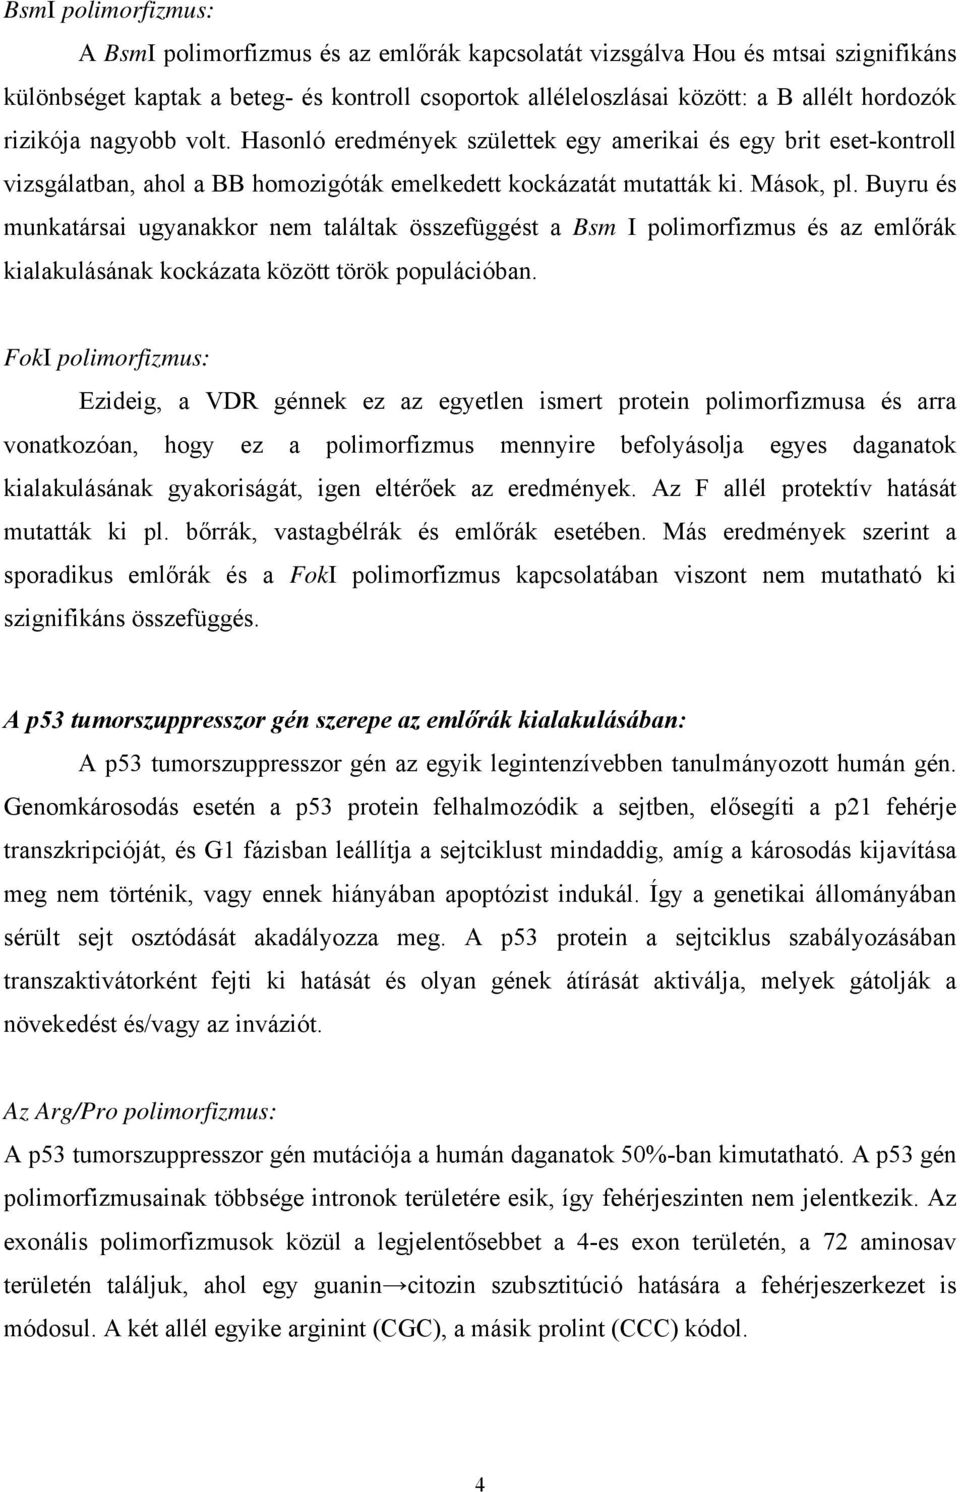 Buyru és munkatársai ugyanakkor nem találtak összefüggést a Bsm I polimorfizmus és az emlőrák kialakulásának kockázata között török populációban.